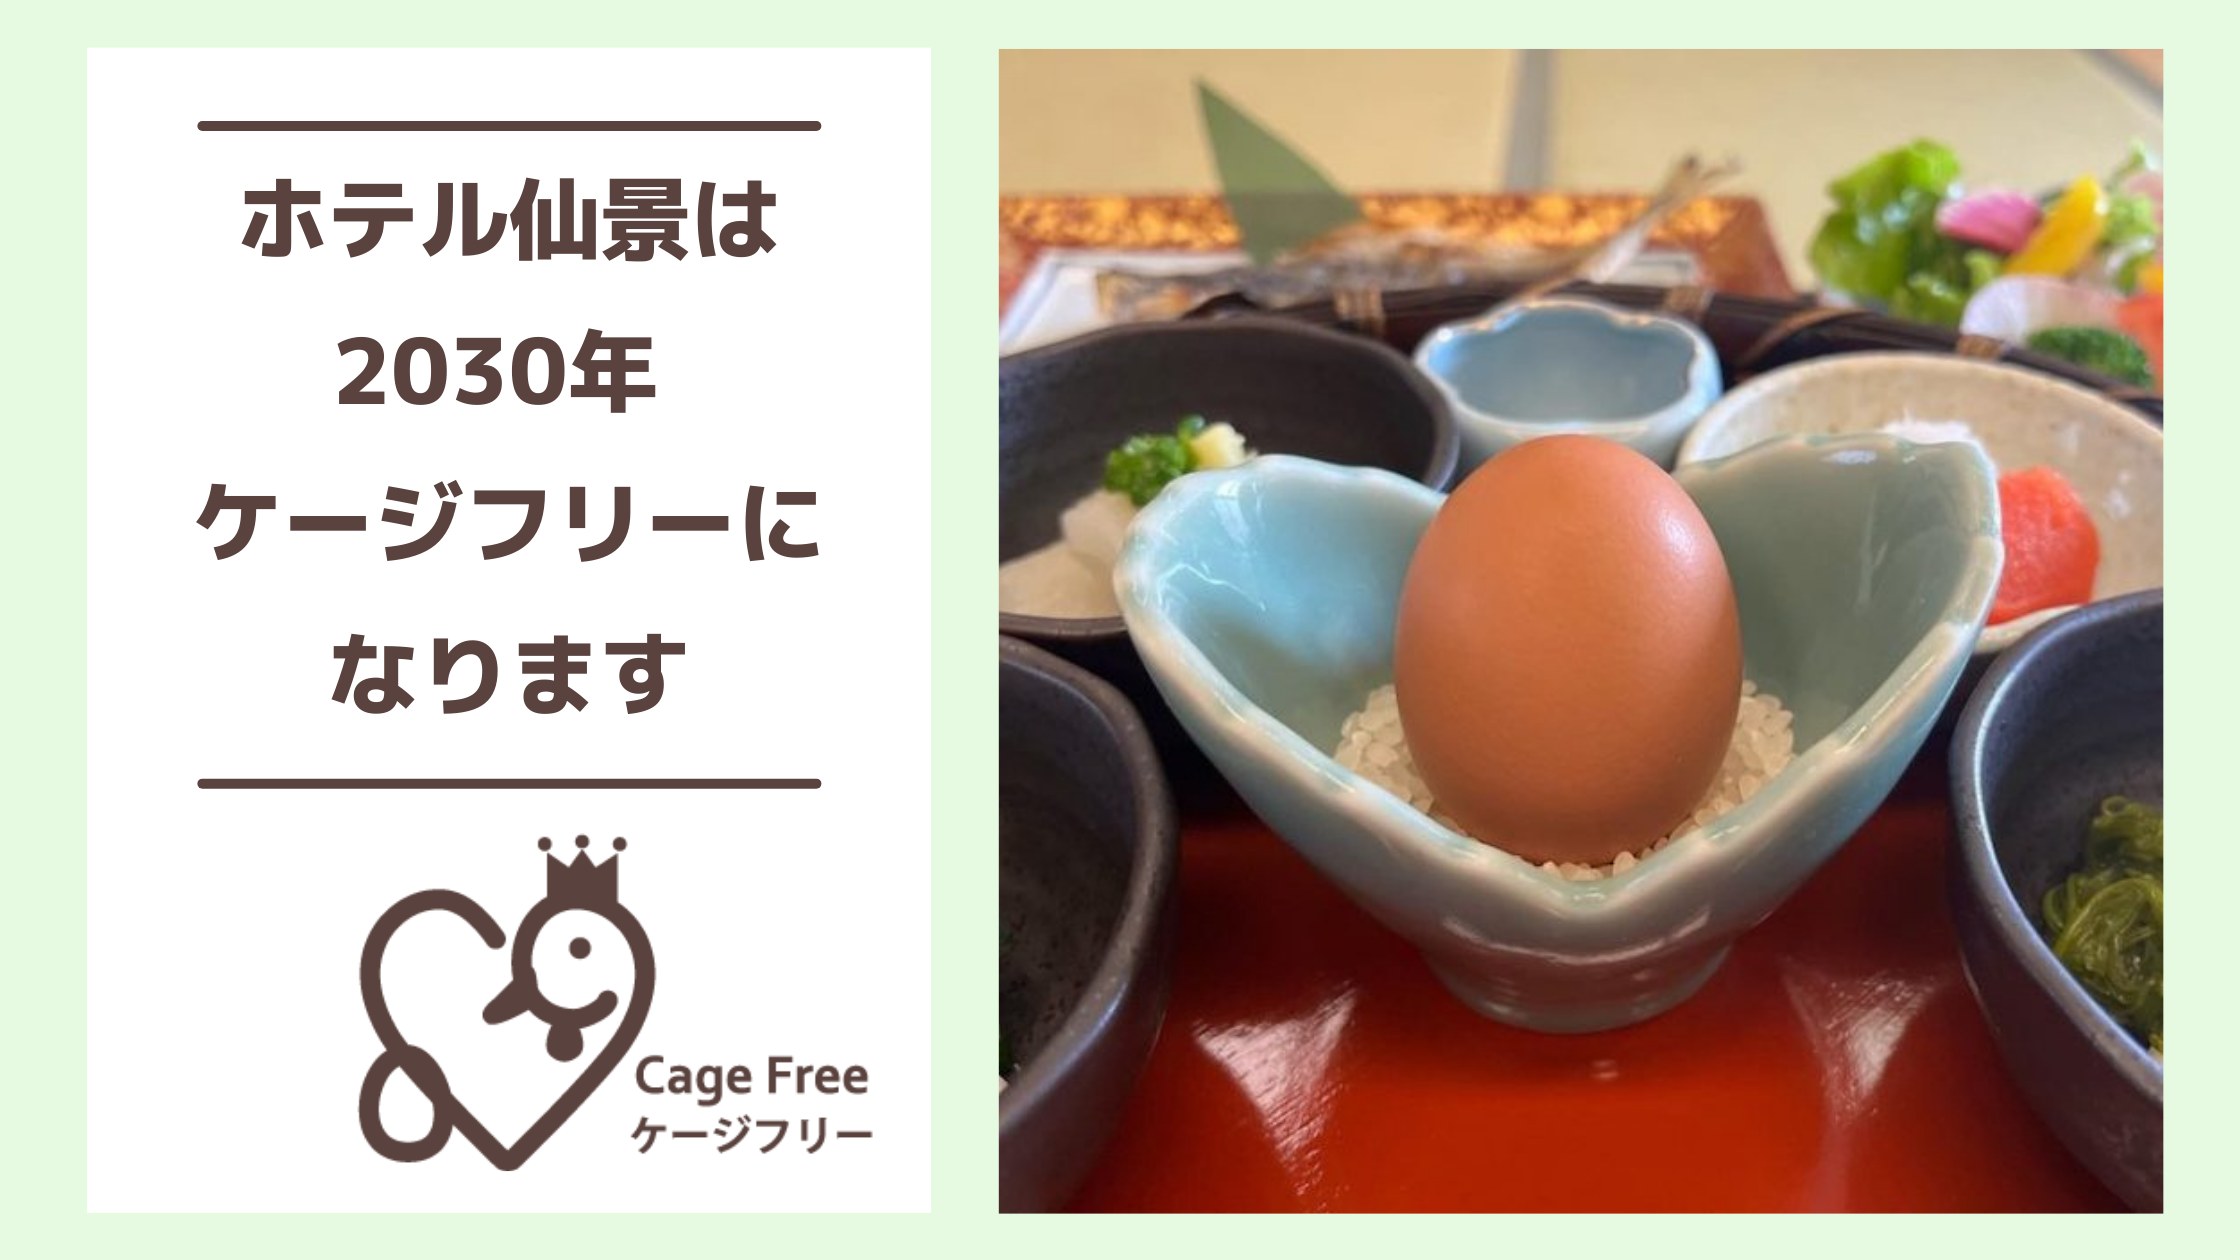 箱根初の取り組み ホテル仙景が30年までに卵をケージフリーに切り替えることを発表 Npo法人アニマルライツセンターのプレスリリース